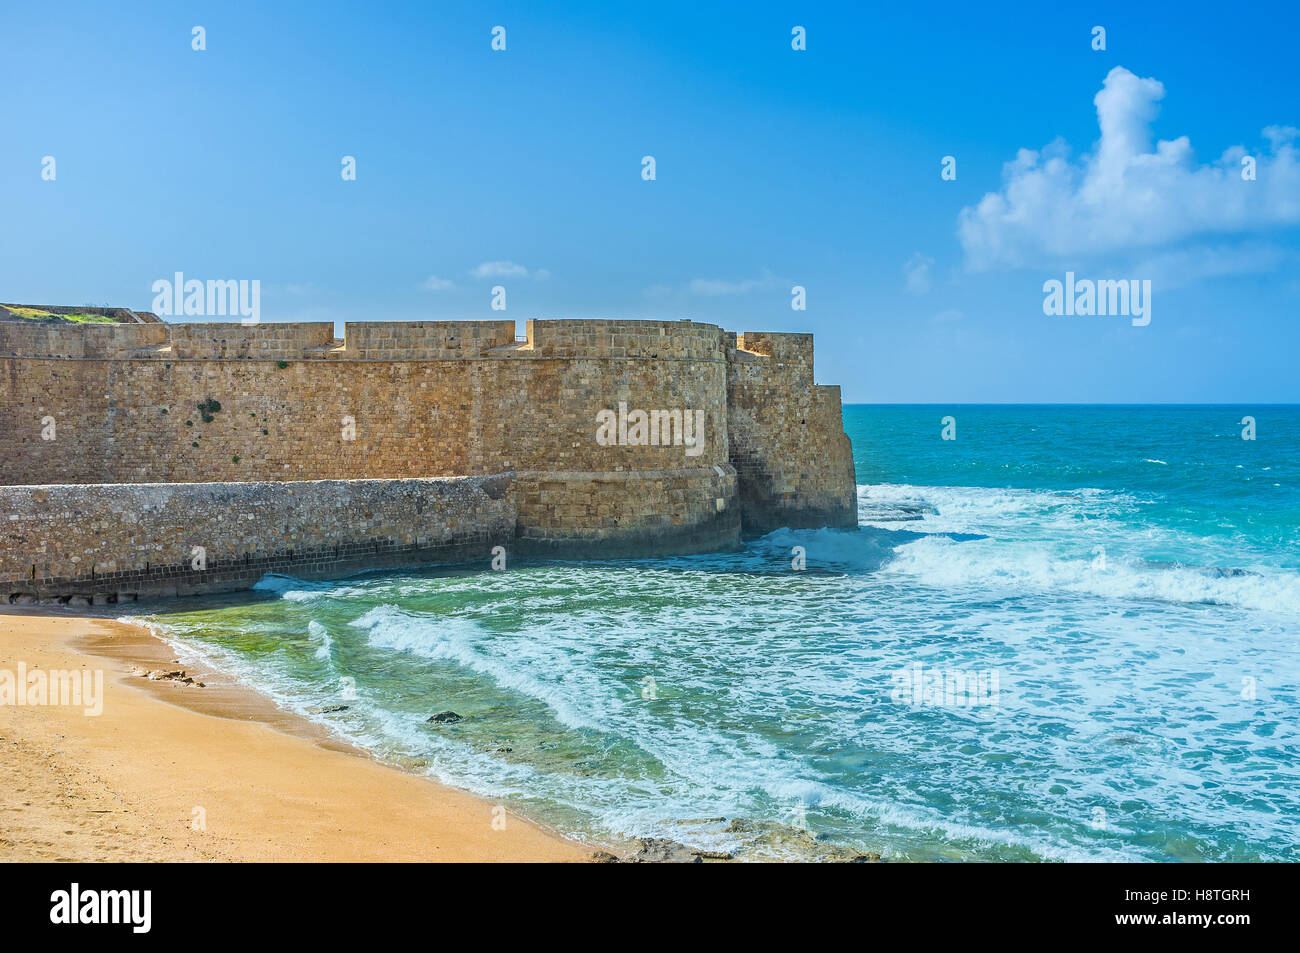 La plage de la ville située à côté de la mer, murs d'Akko, Israël. Banque D'Images